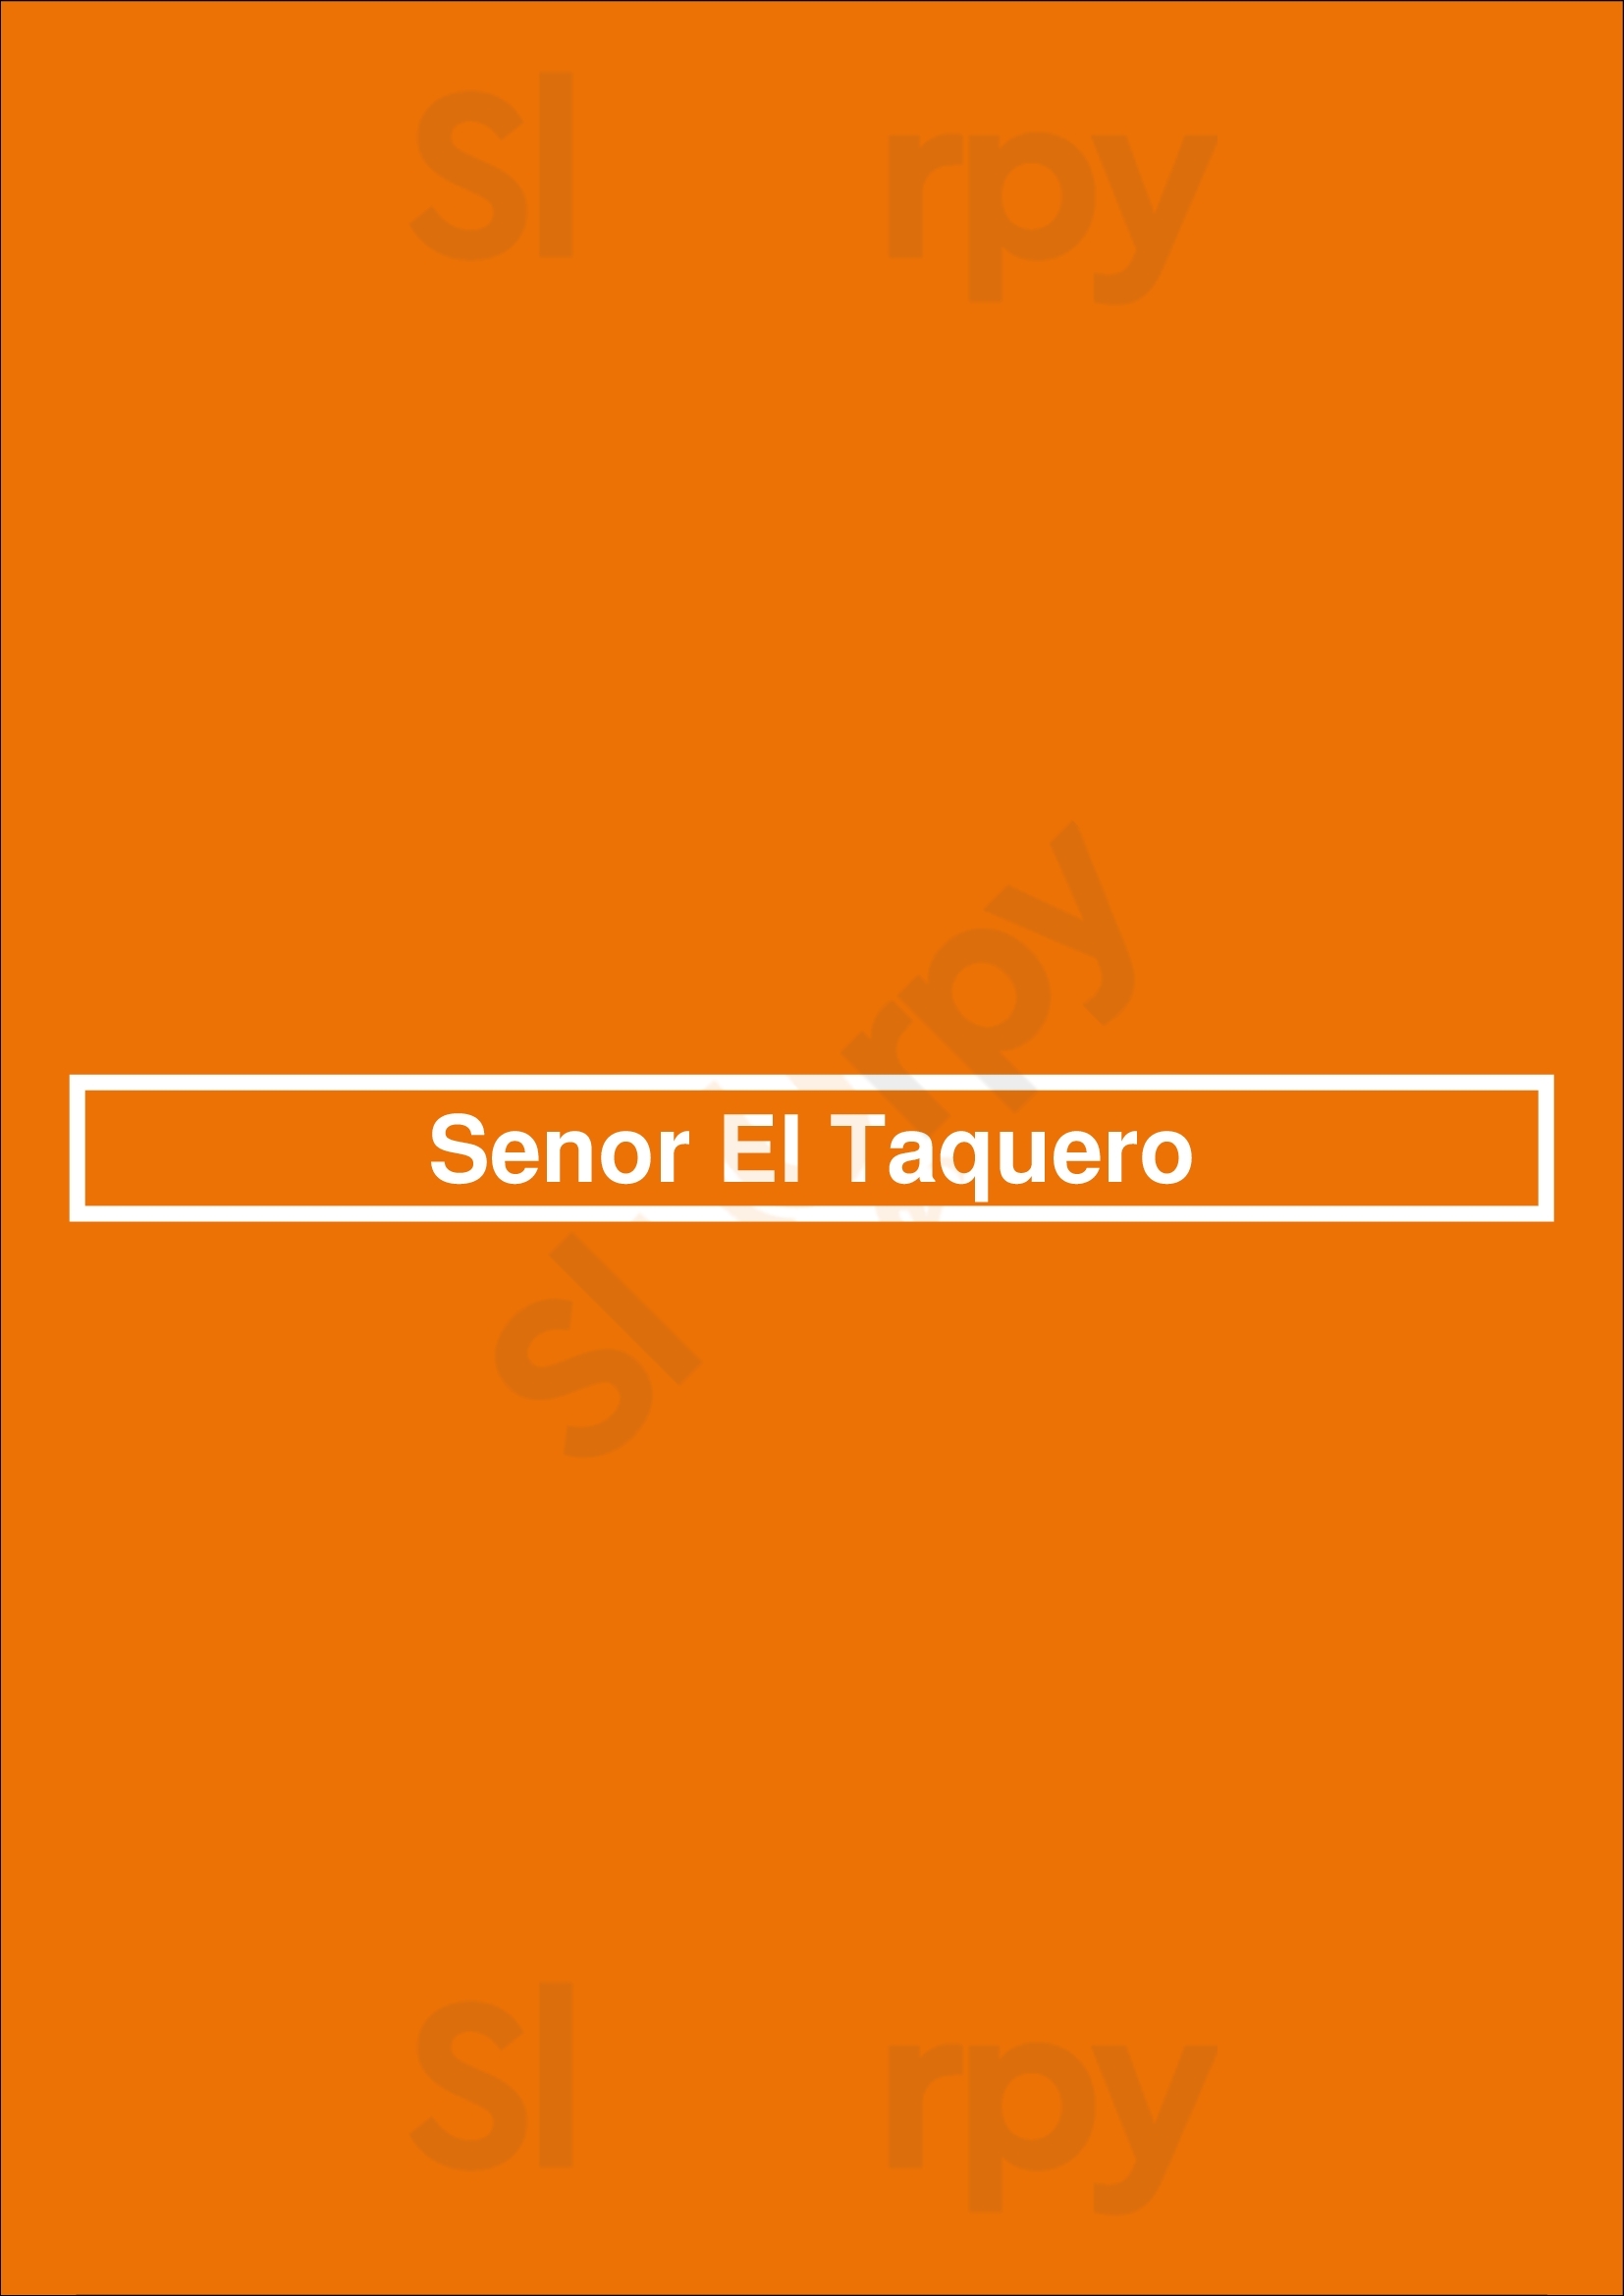 Senor El Taquero San Diego Menu - 1